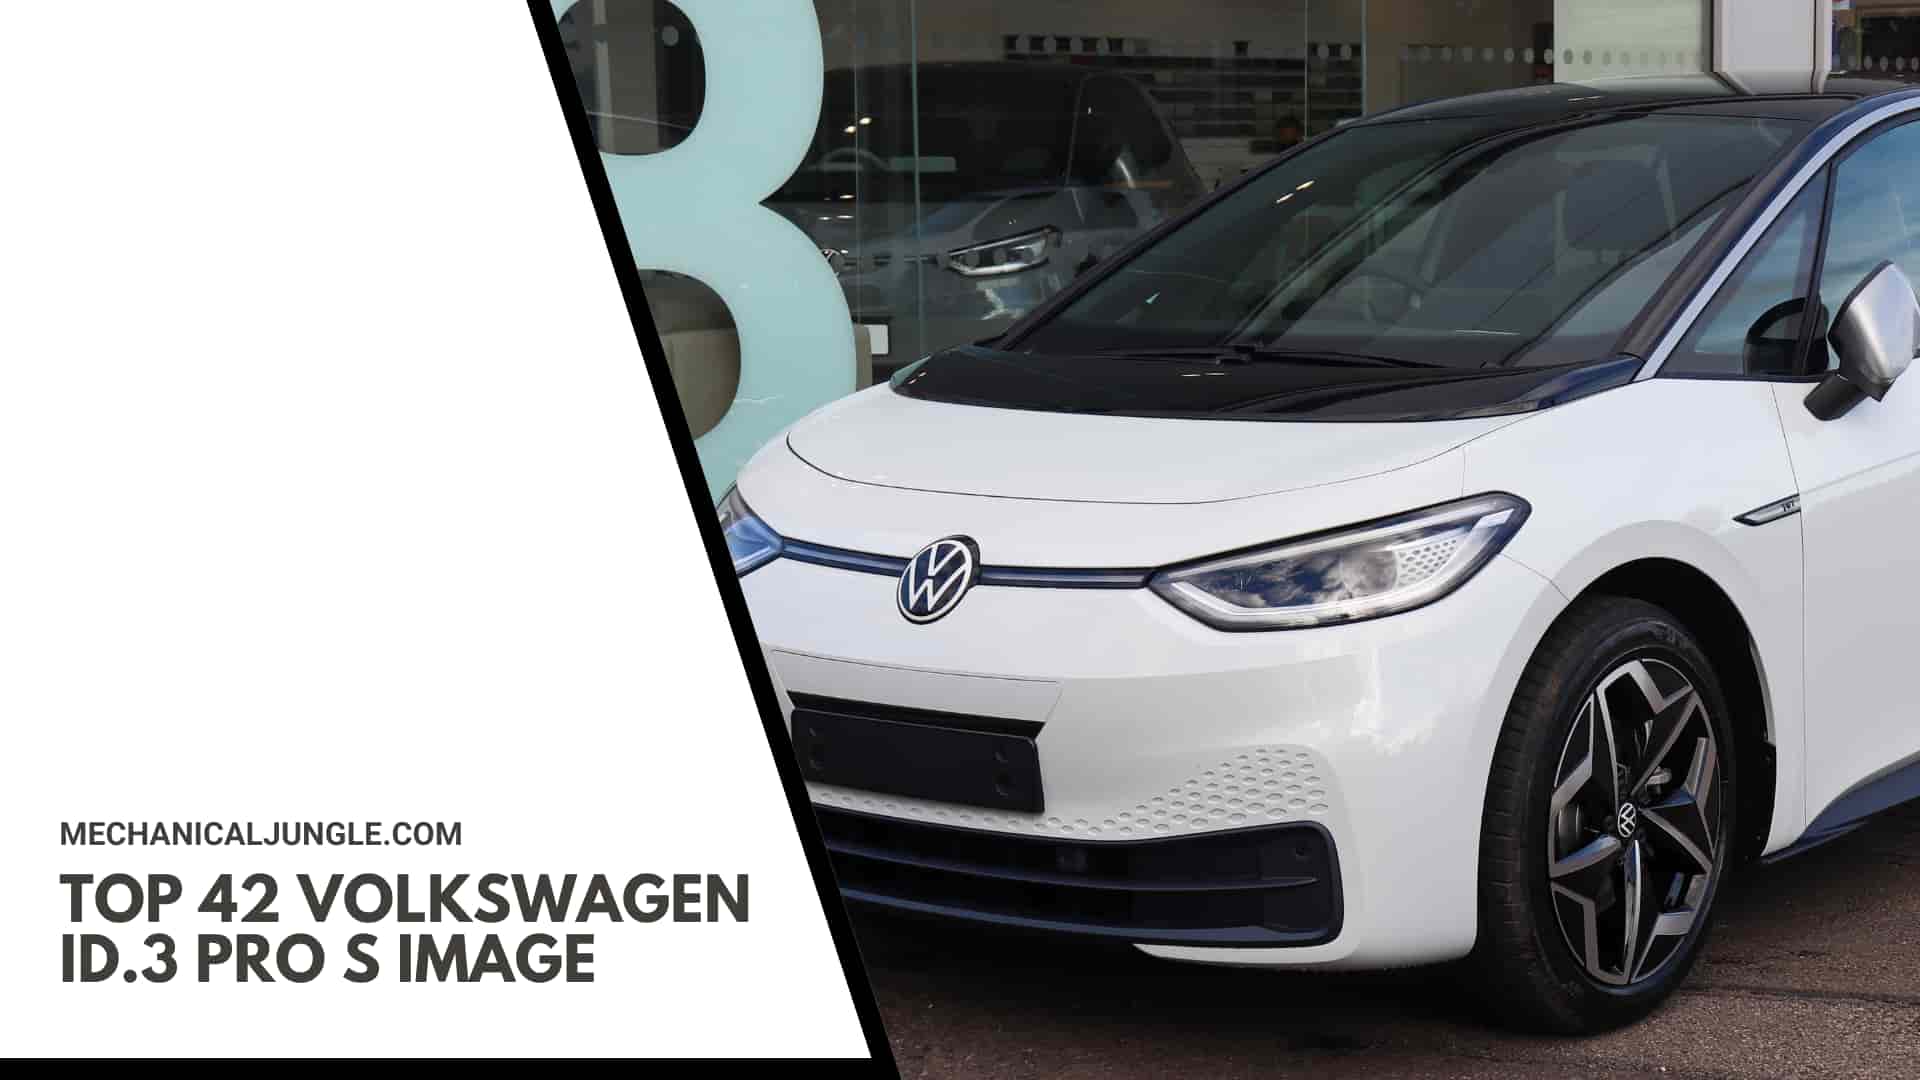 Top 42 Volkswagen ID.3 Pro S Image